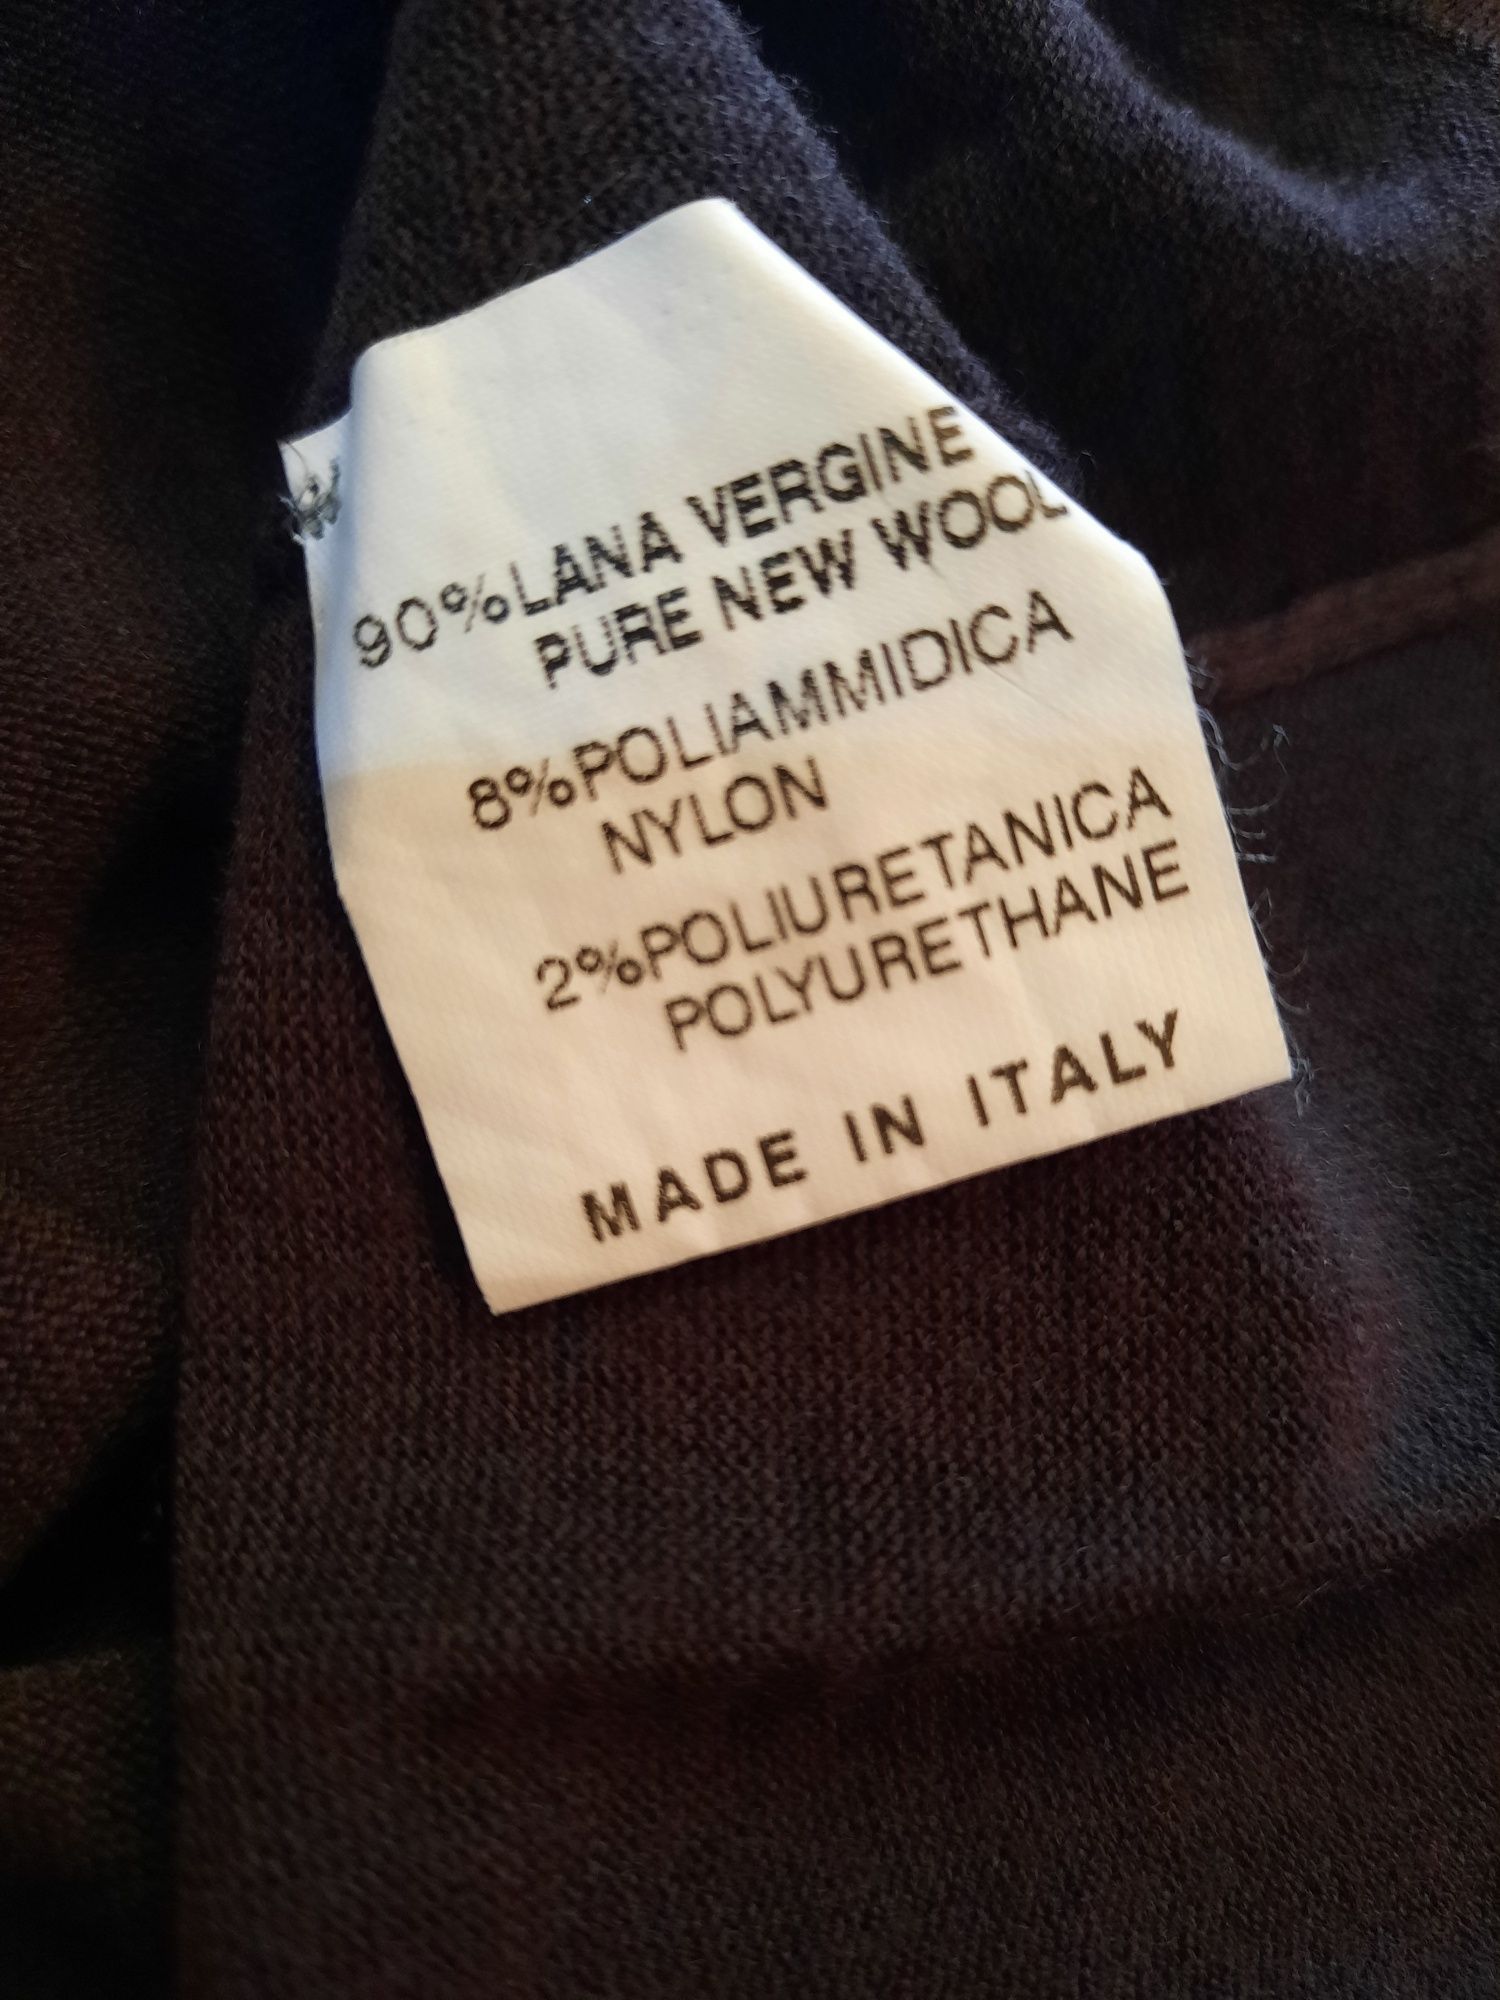 Bluza Gucci autentică, lână virgină